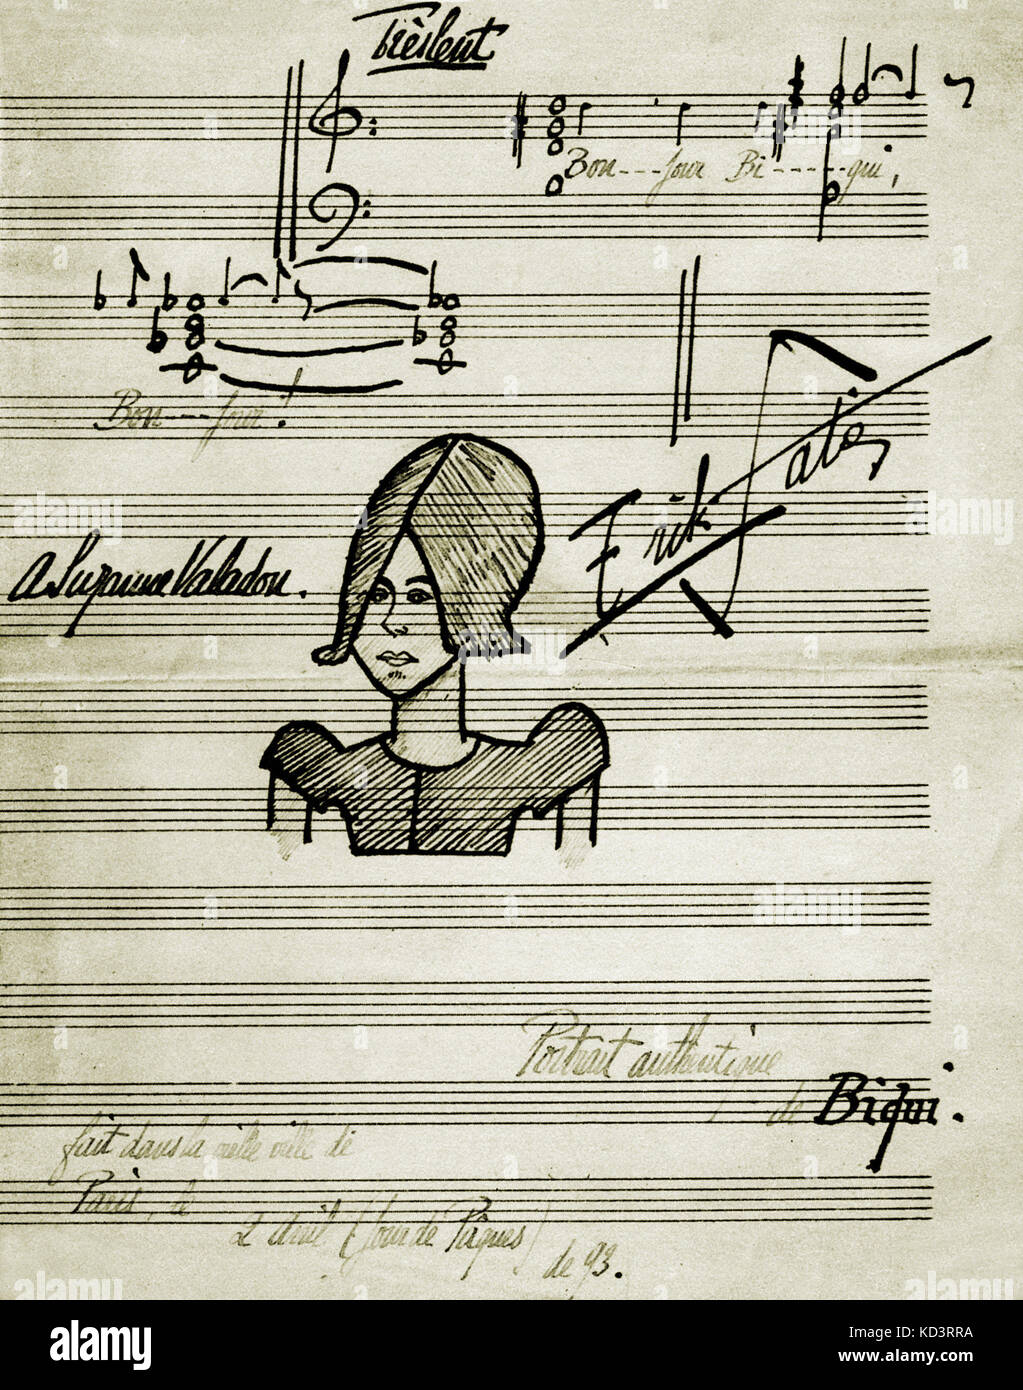 SATIE, E- le portrait de Suzanne VALADON par Satie - romantique lien . Compositeur français, 17 mai 1866 - 1 juillet 1925. Banque D'Images